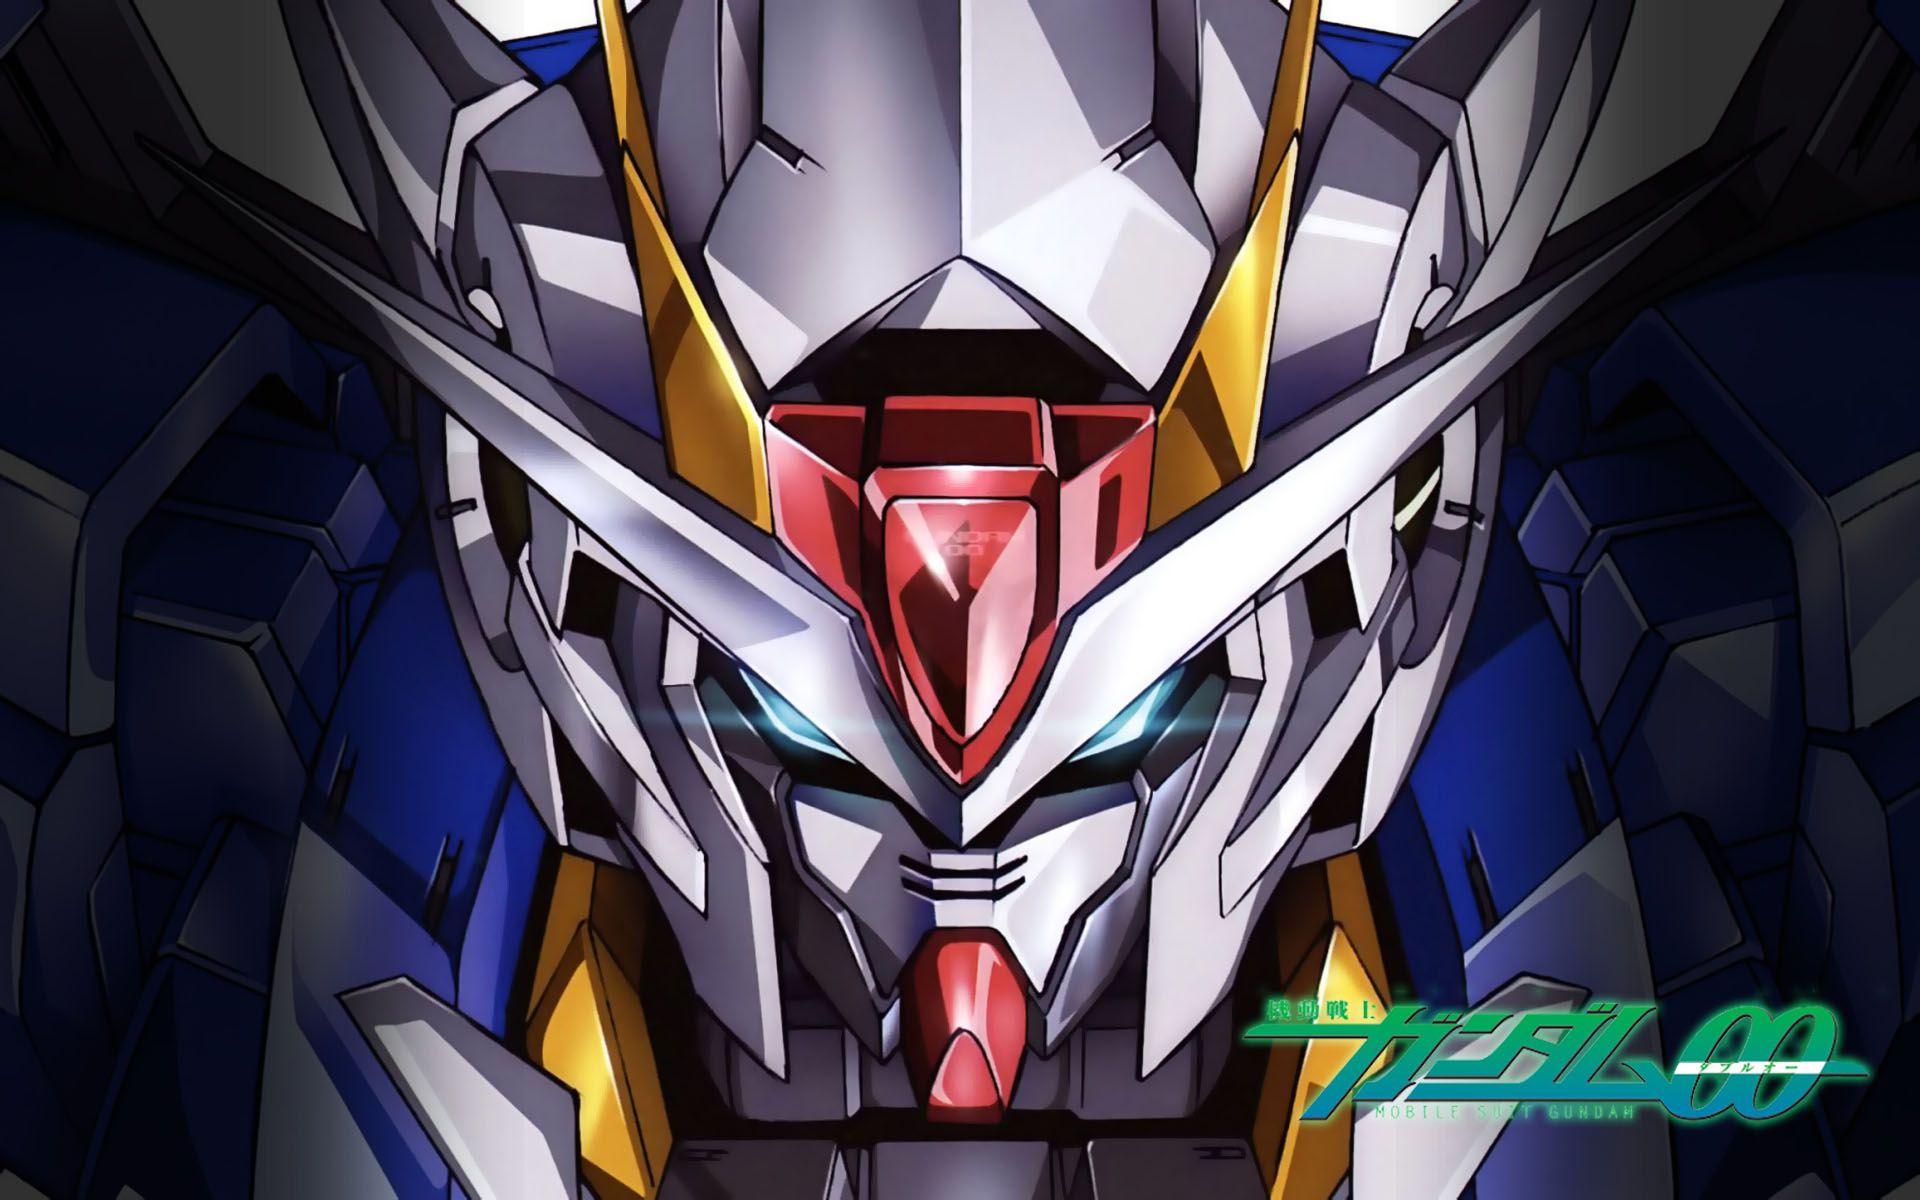 Gundam Background Free download